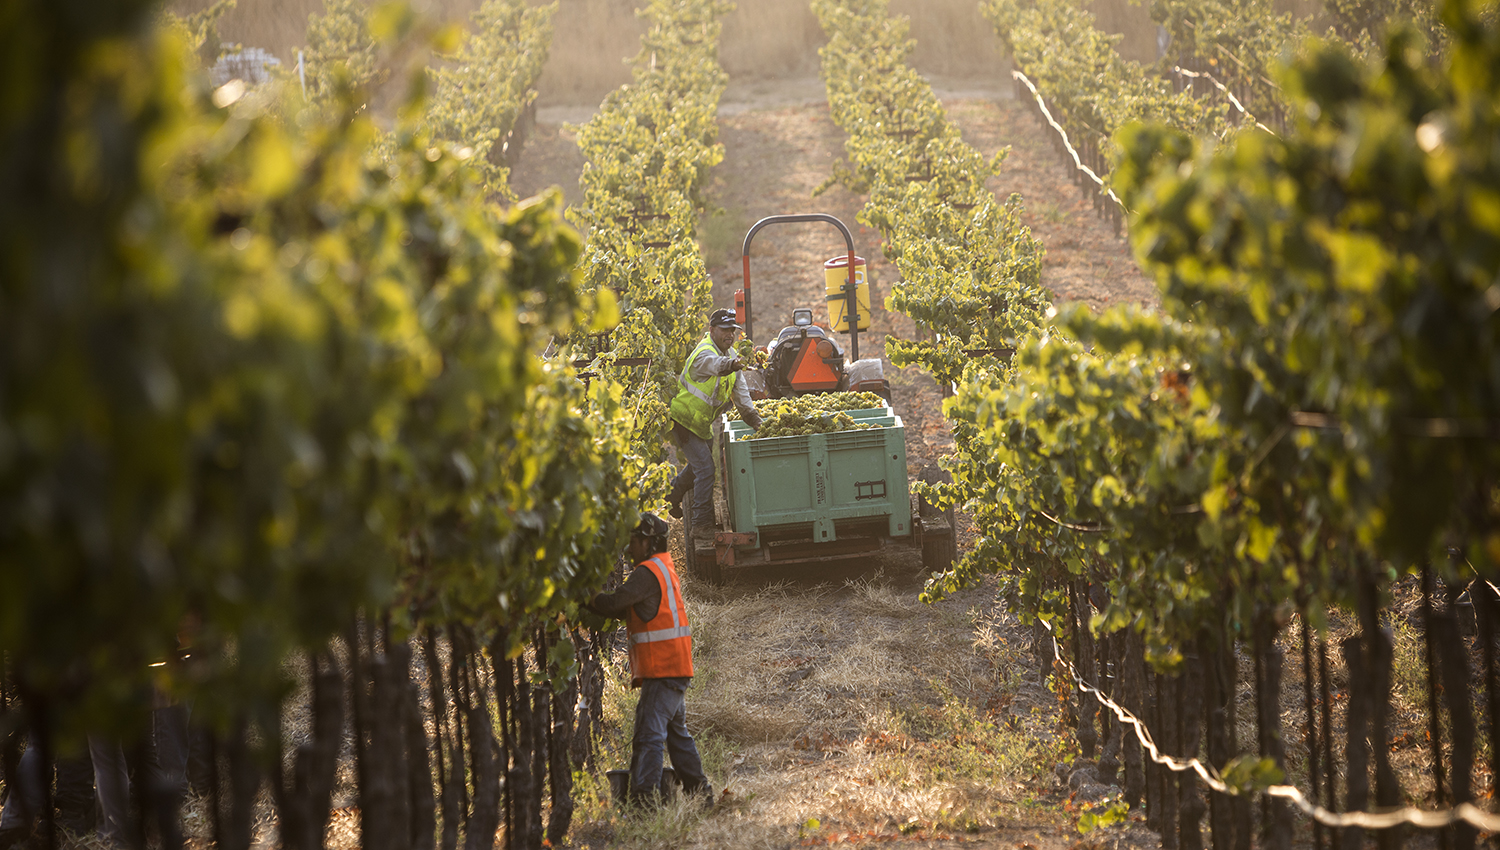 Workers at the Lewis Vineyard between grape vines